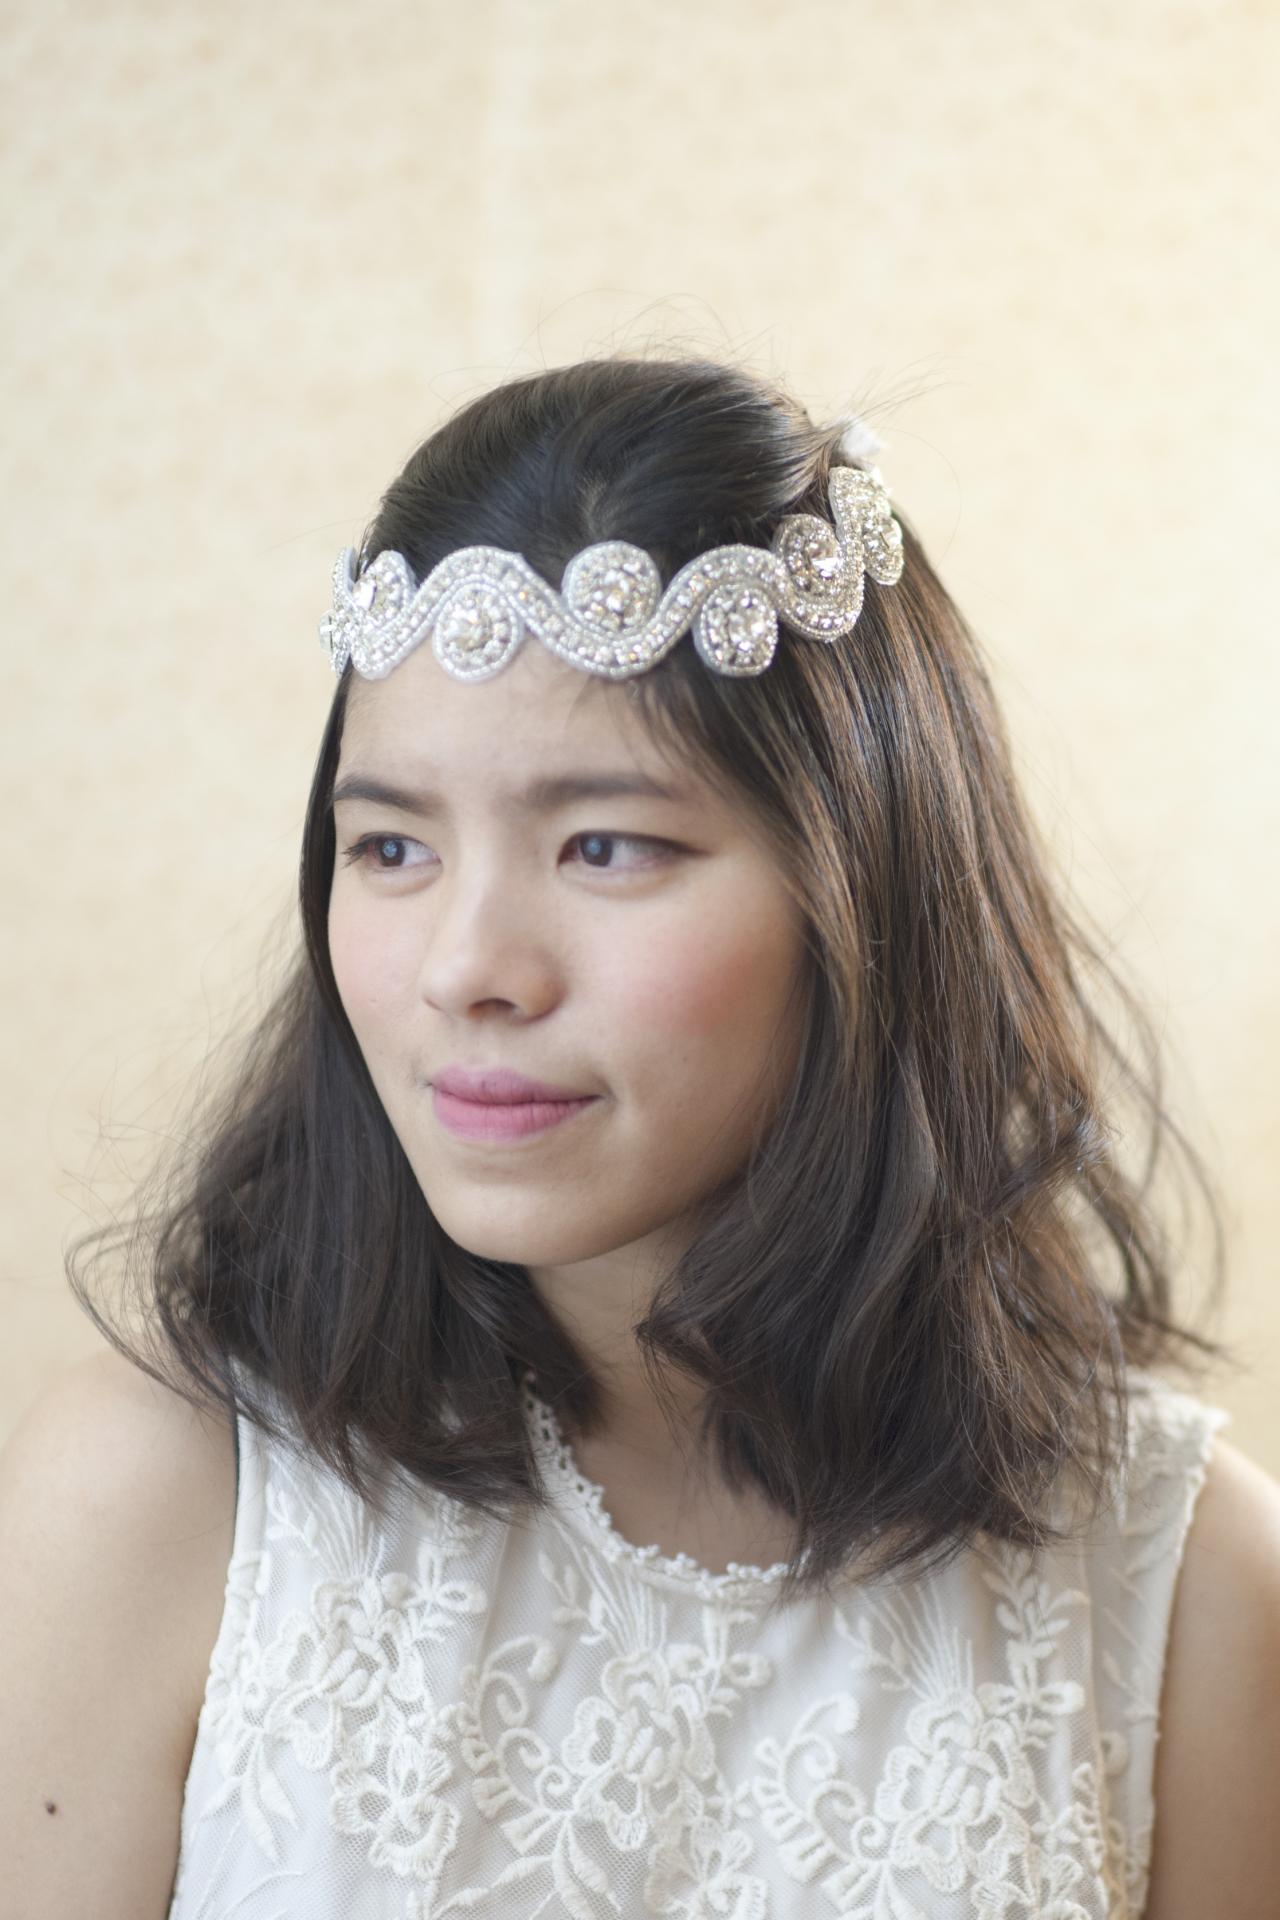 Bridal Hairband - Wedding Headpiece - Boho Style Hairband